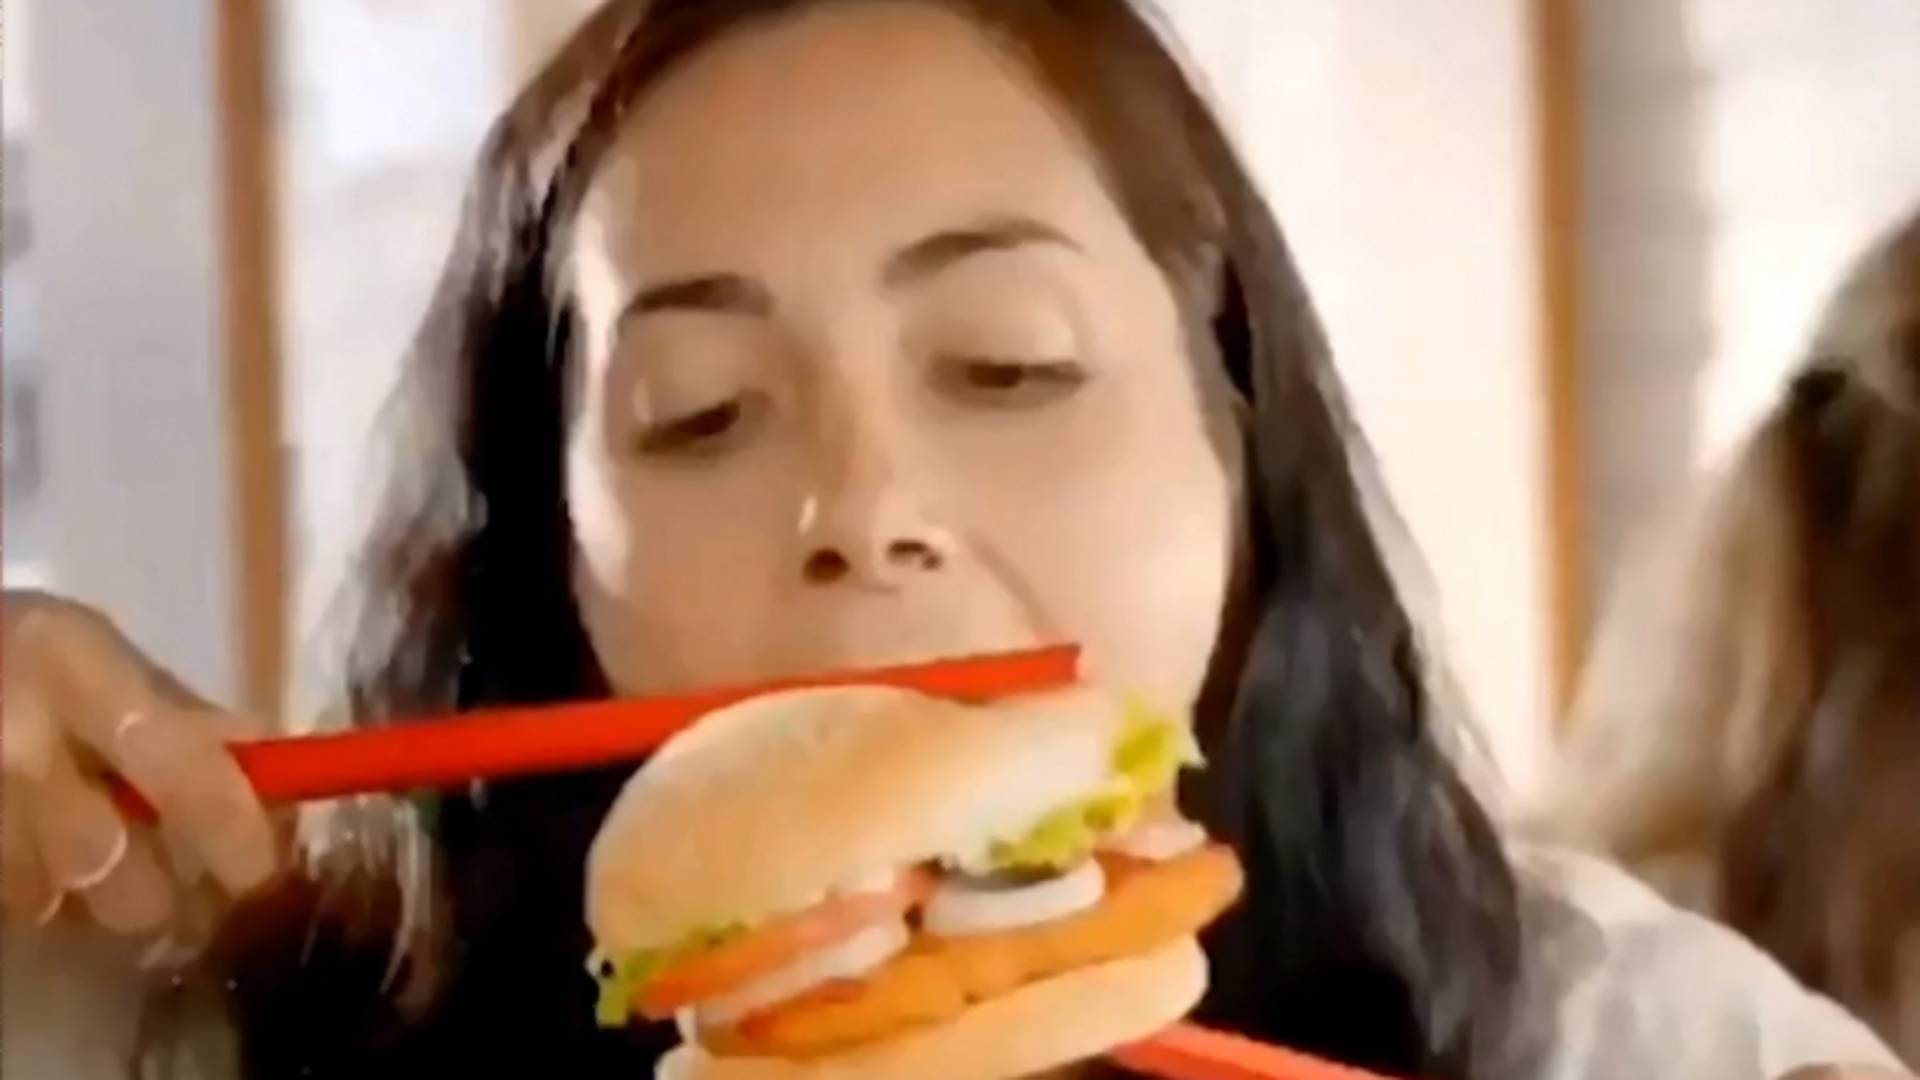 Rasistowska reklama Burger Kinga rozwścieczyła klientów. Firma przeprasza i usuwa spot